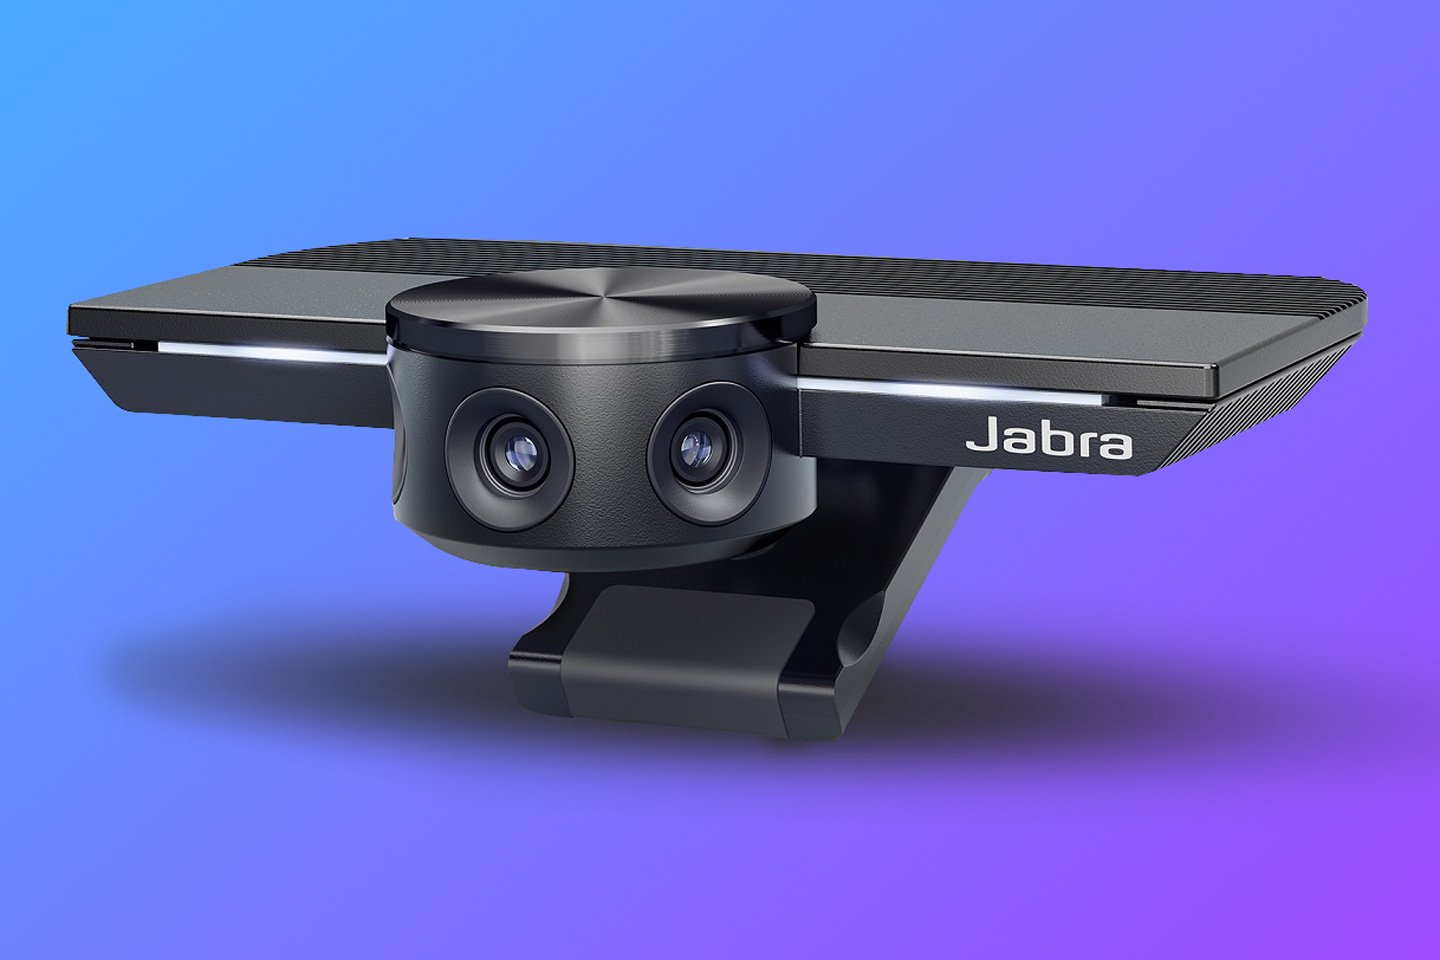 Kamera internetowa Jabra z trzema obiektywami ma szerokie pole widzenia 180°, całkowicie miażdżąc centralną scenę Apple